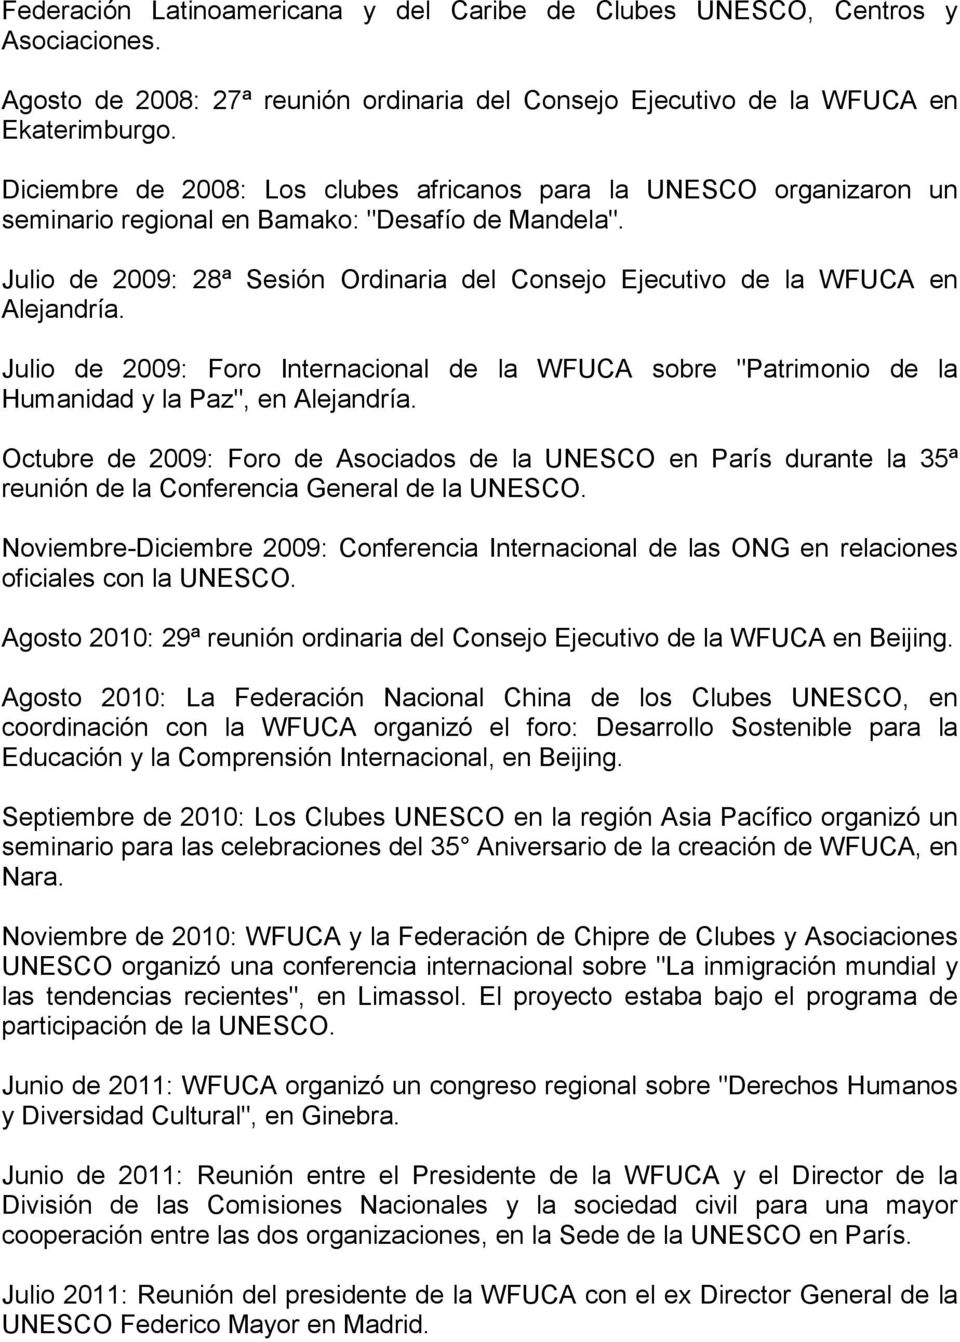 Julio de 2009: 28ª Sesión Ordinaria del Consejo Ejecutivo de la WFUCA en Alejandría. Julio de 2009: Foro Internacional de la WFUCA sobre "Patrimonio de la Humanidad y la Paz", en Alejandría.